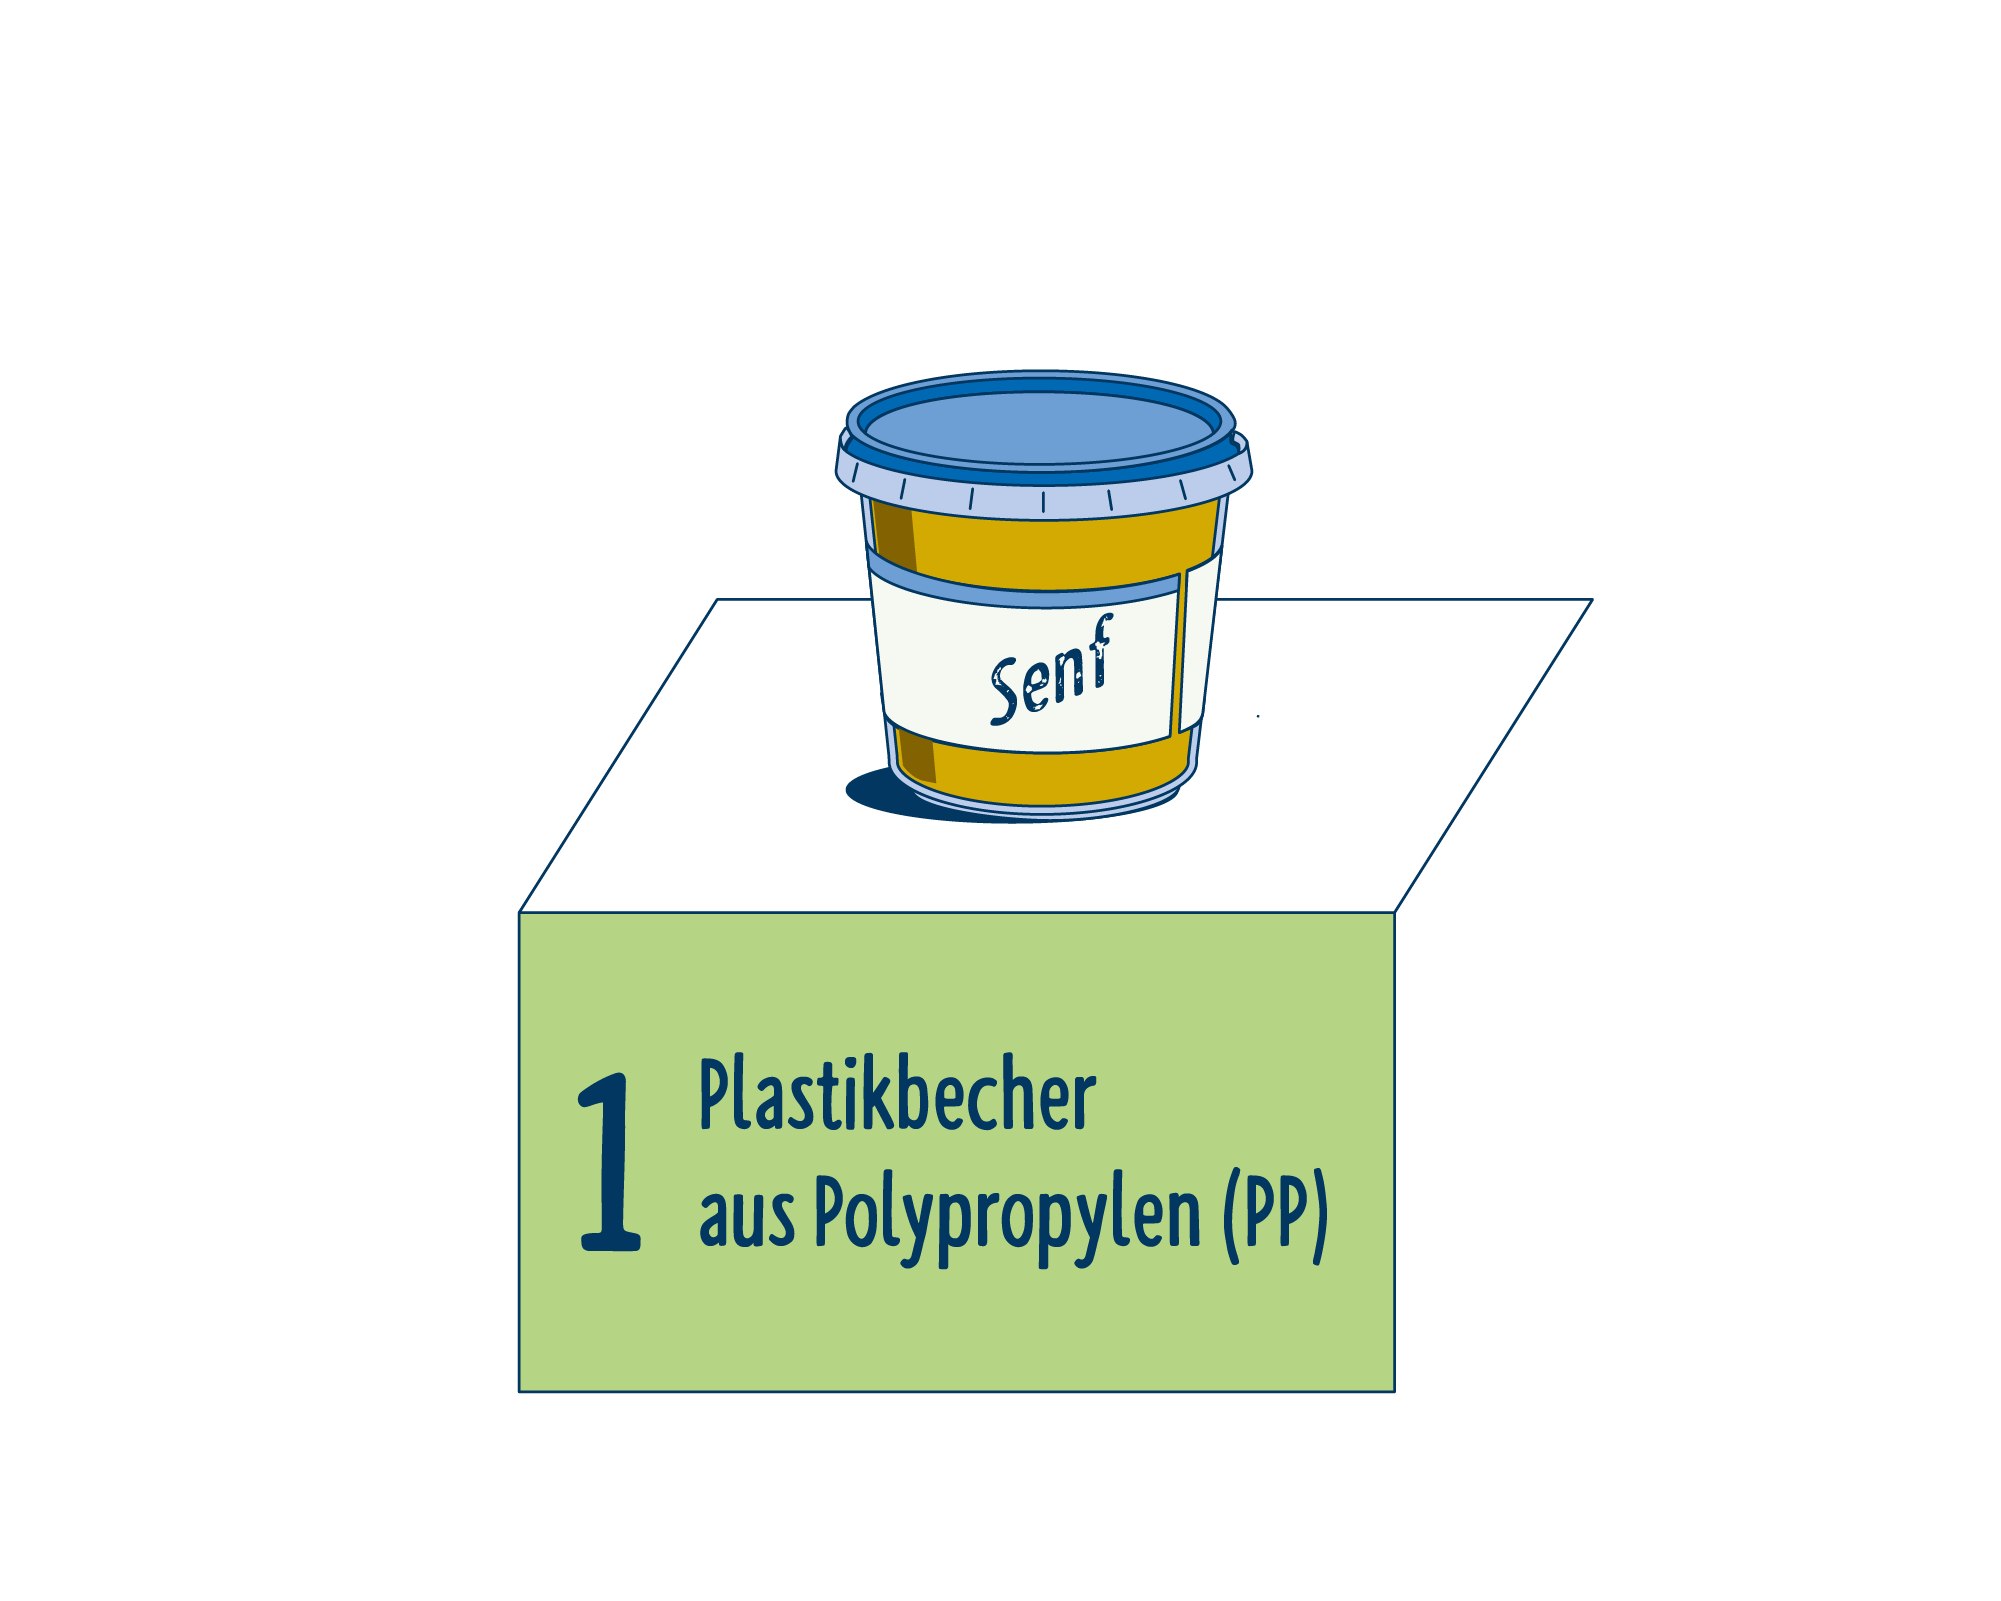 Bild Produktverpackung von Senf & Saucen eingeordnet auf Platz 1, bestehend aus Plastikbecher aus Polypropylen (PP).